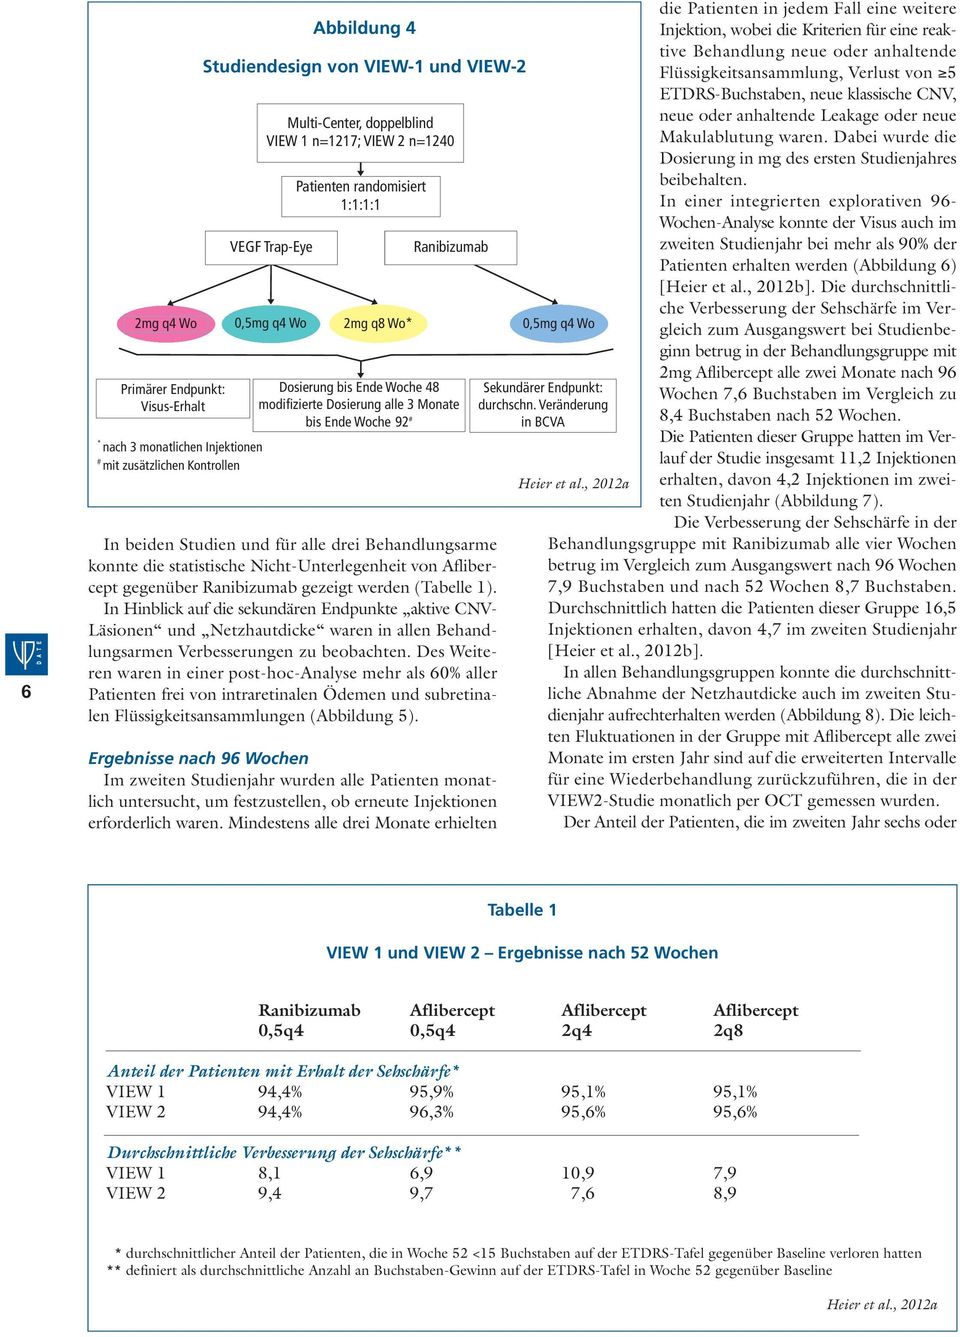 Studien und für alle drei Behandlungsarme konnte die statistische Nicht-Unterlegenheit von Aflibercept gegenüber Ranibizumab gezeigt werden (Tabelle 1).